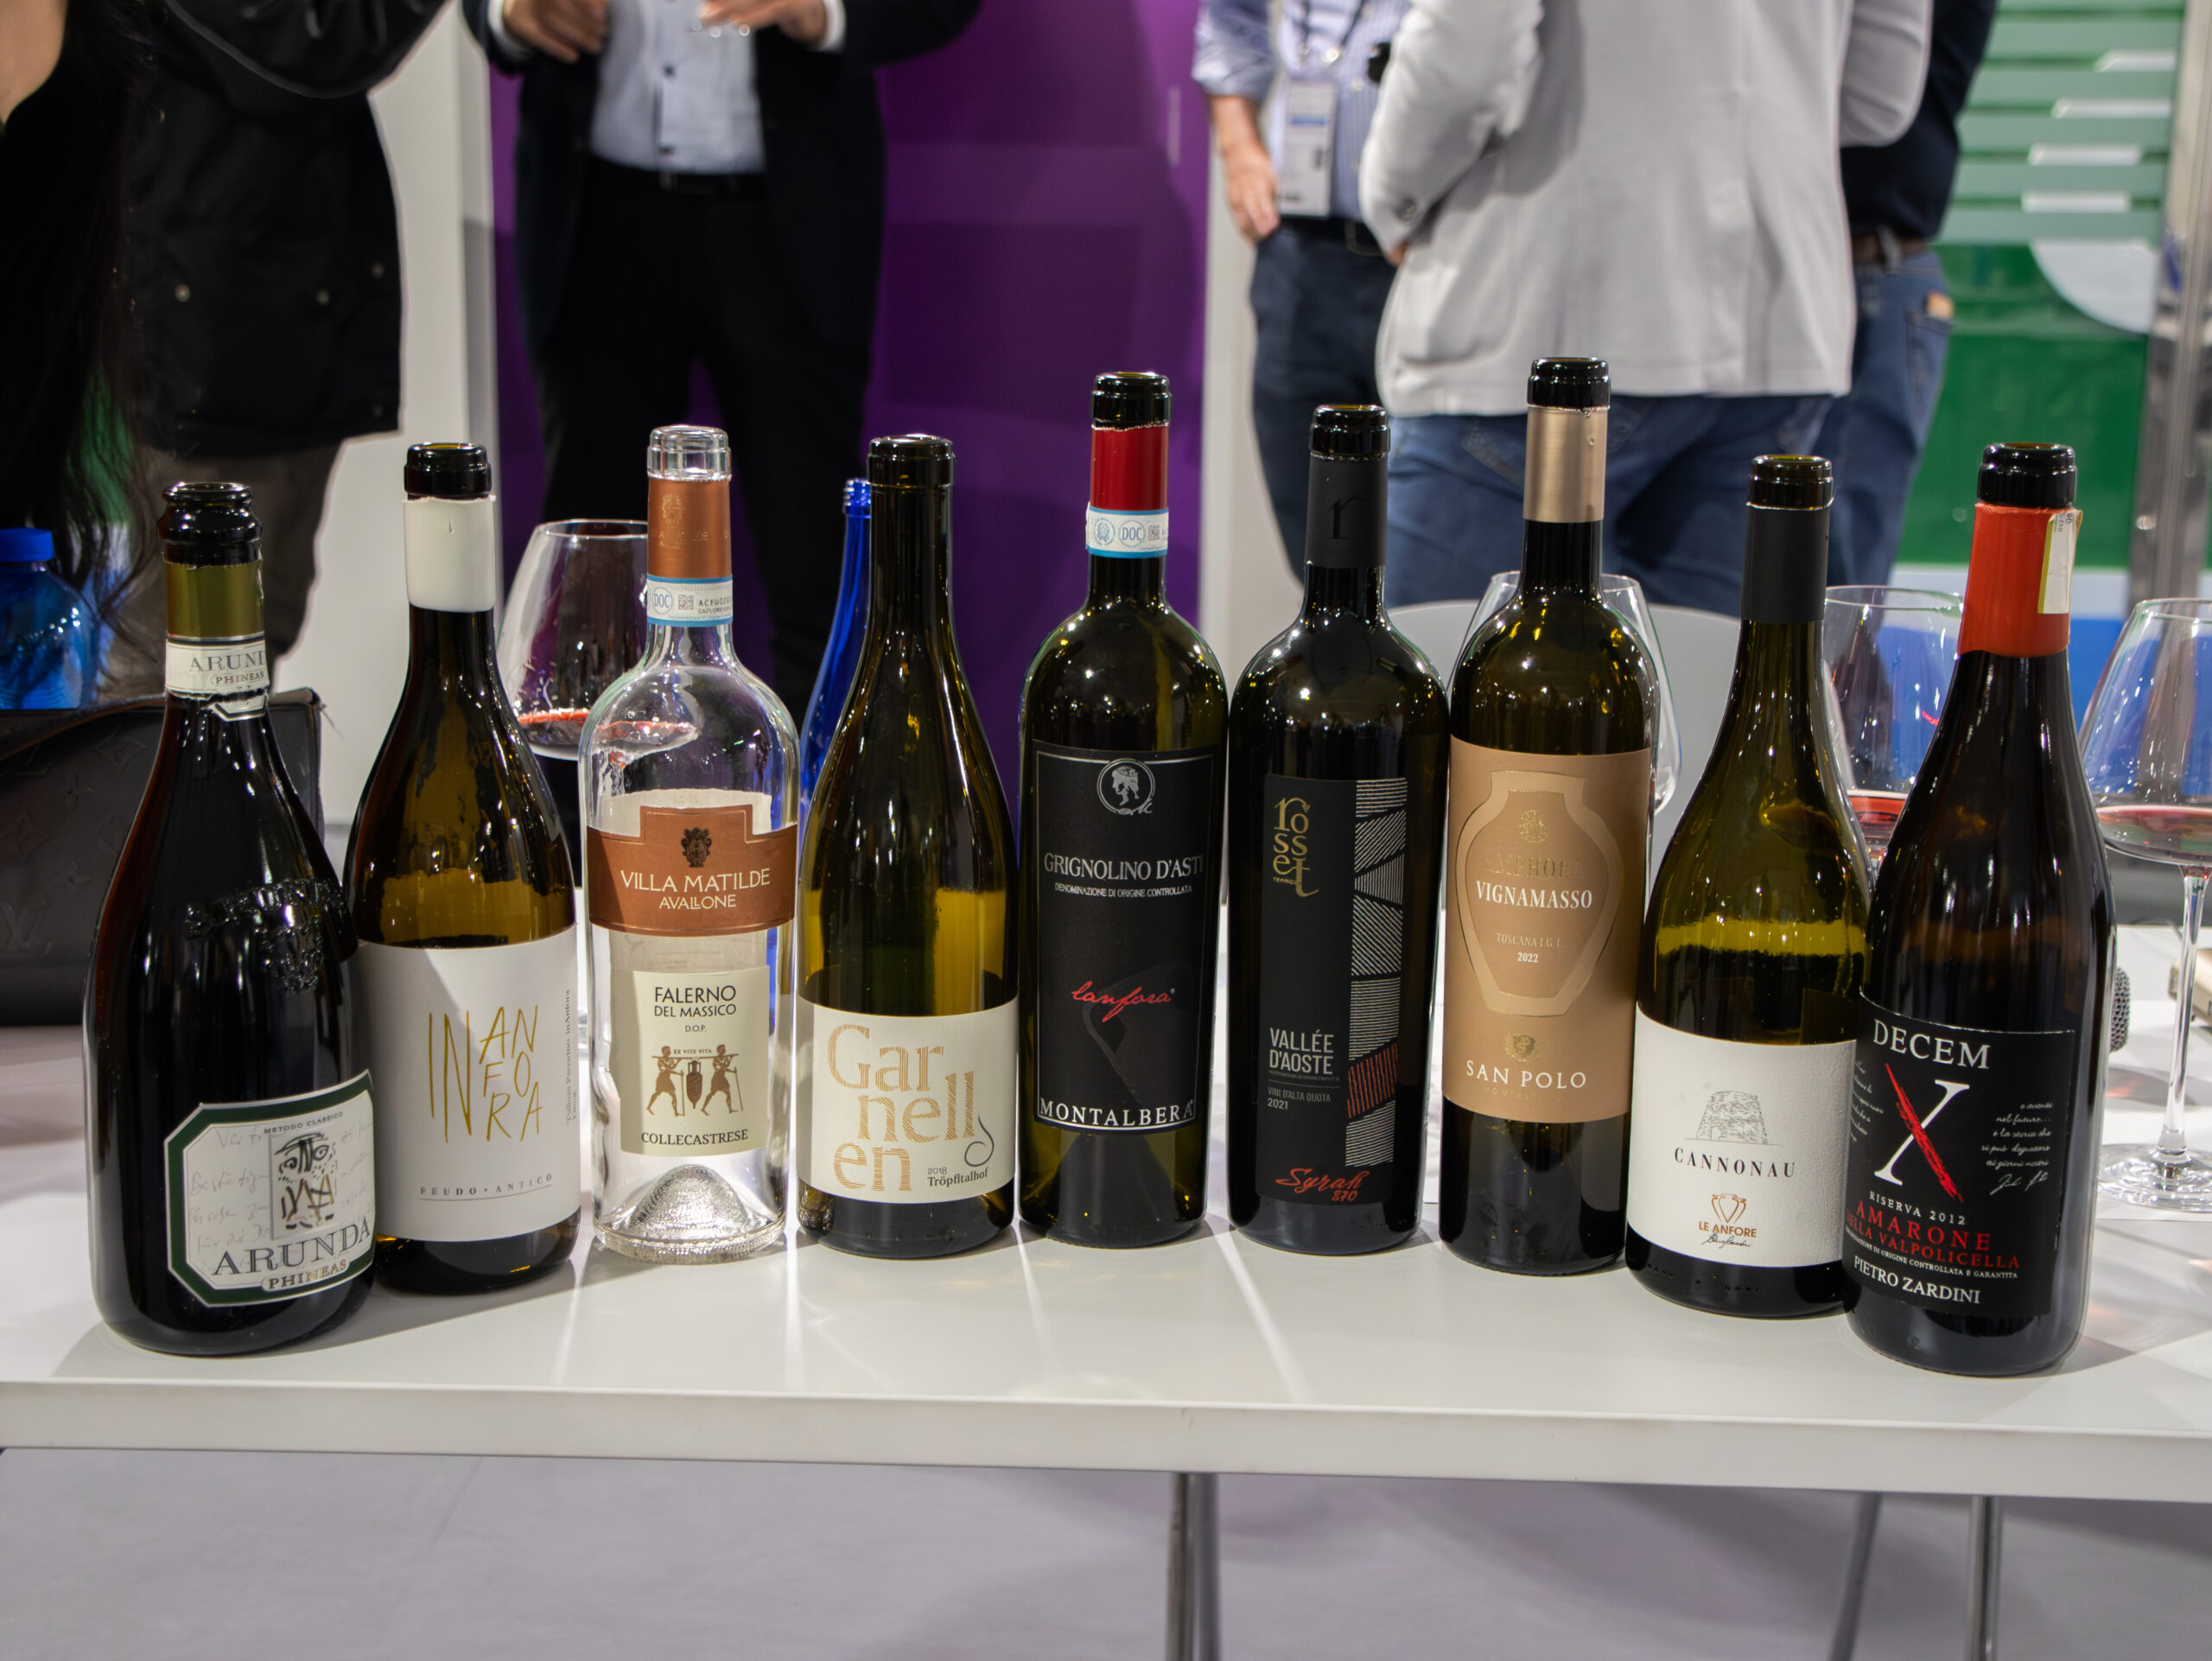 Merano Winefestival e Vinitaly hanno presentato il nuovo progetto che promuove i vini in anfora con la masterclass “Amphora Revolution”